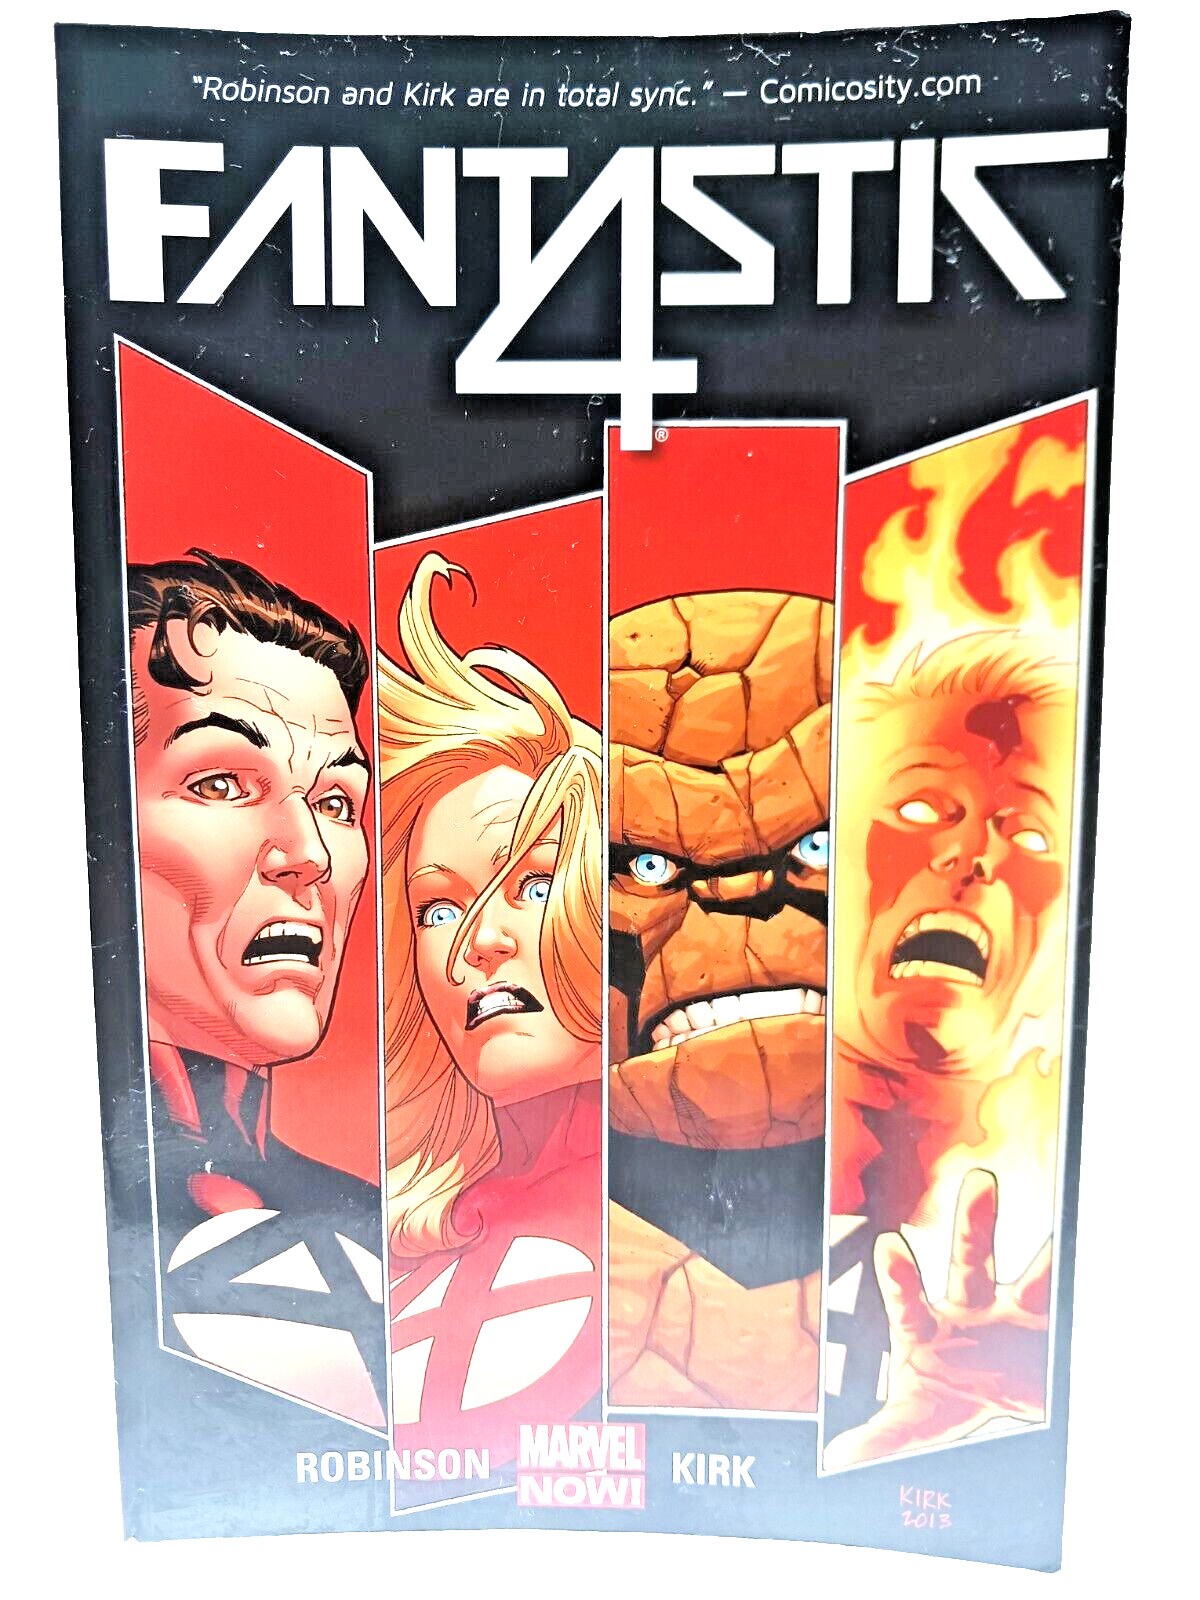 Fantastic Four Volume 1: The Fall of the Fantastic Four